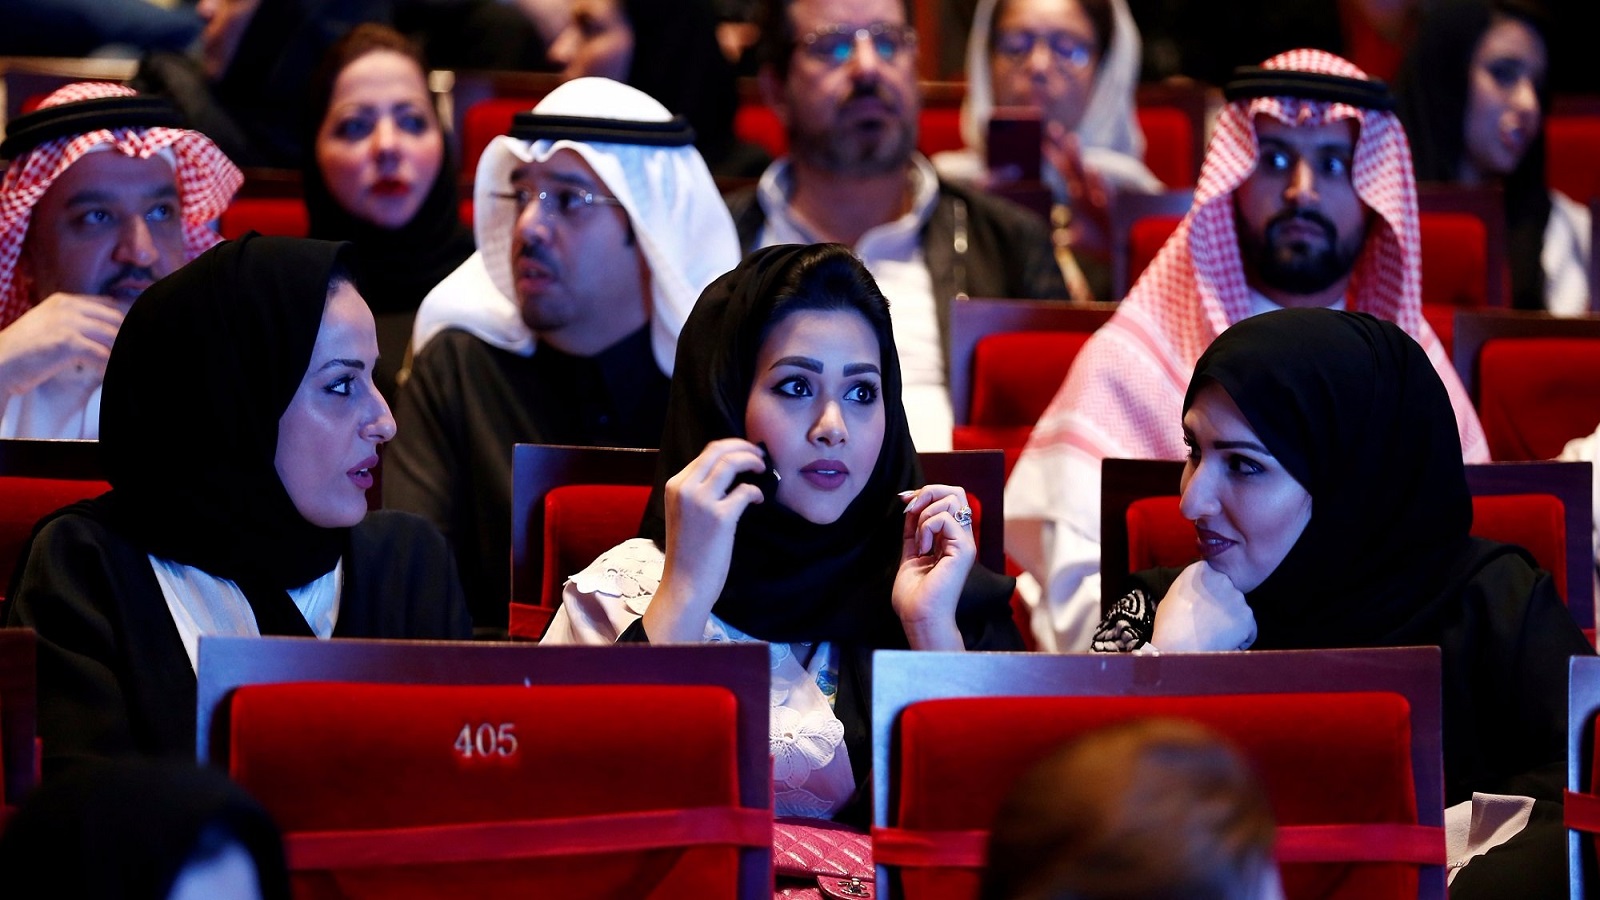 دور السينما السعودية... هل تخترع حياة جديدة؟